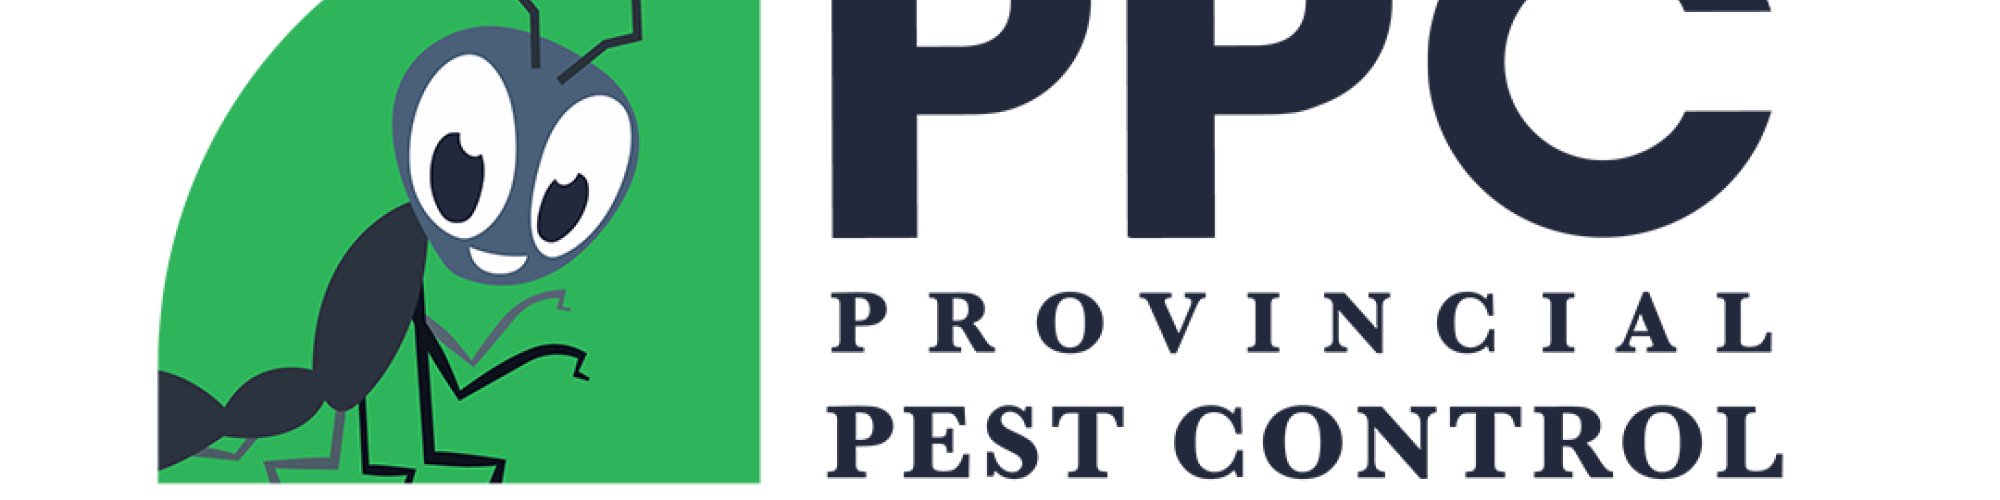 Provincial Pest Control Toronto